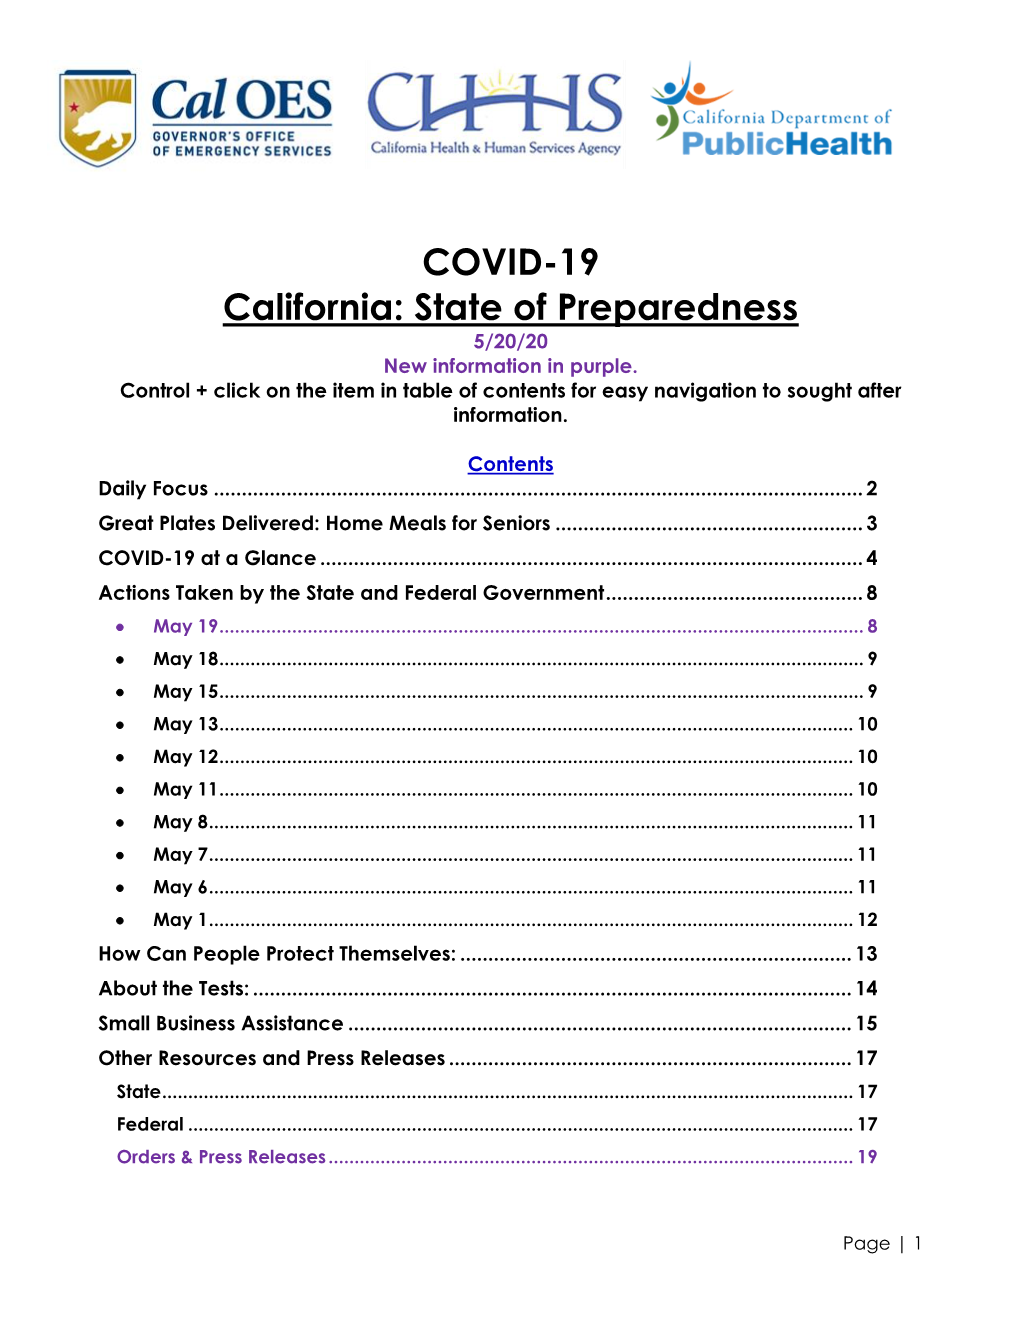 COVID-19 California: State of Preparedness 5/20/20 New Information in Purple